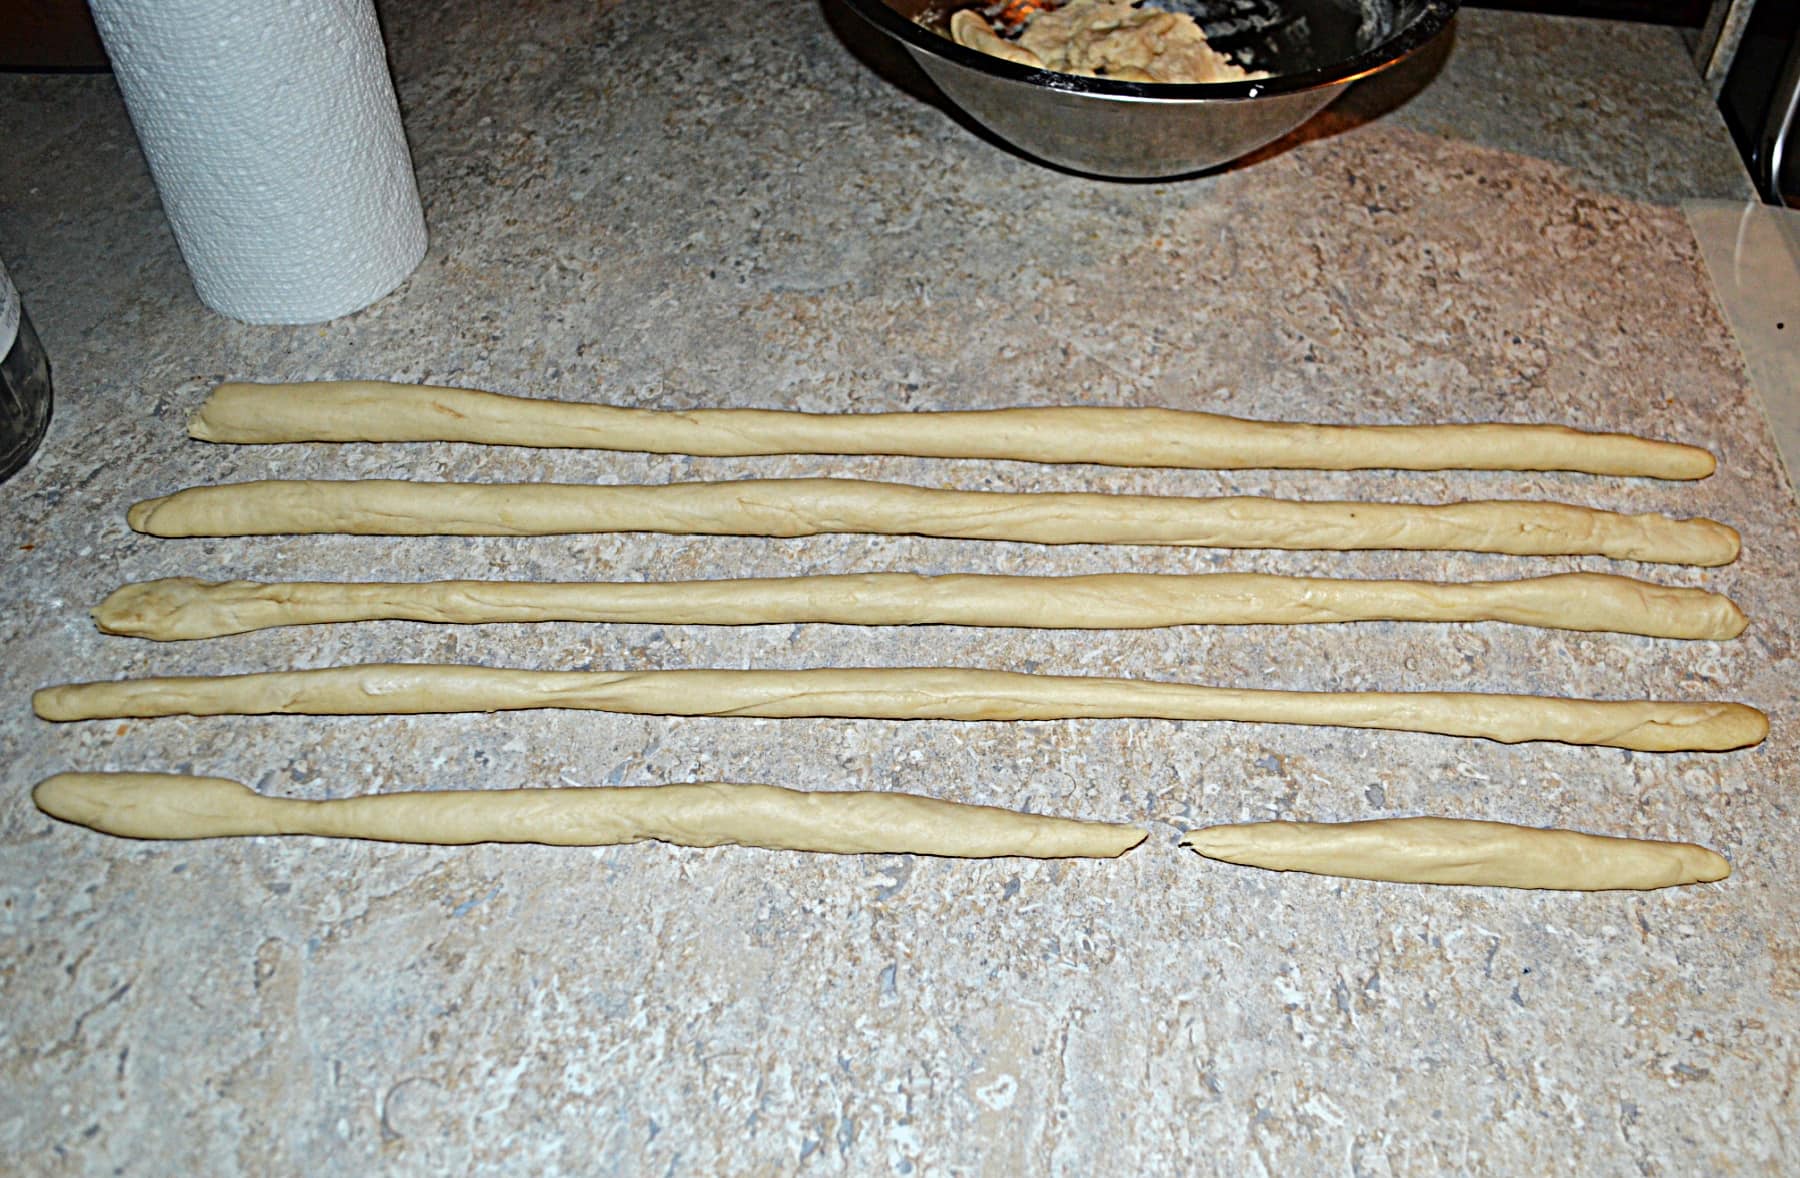 Five ropes of pretzel dough.